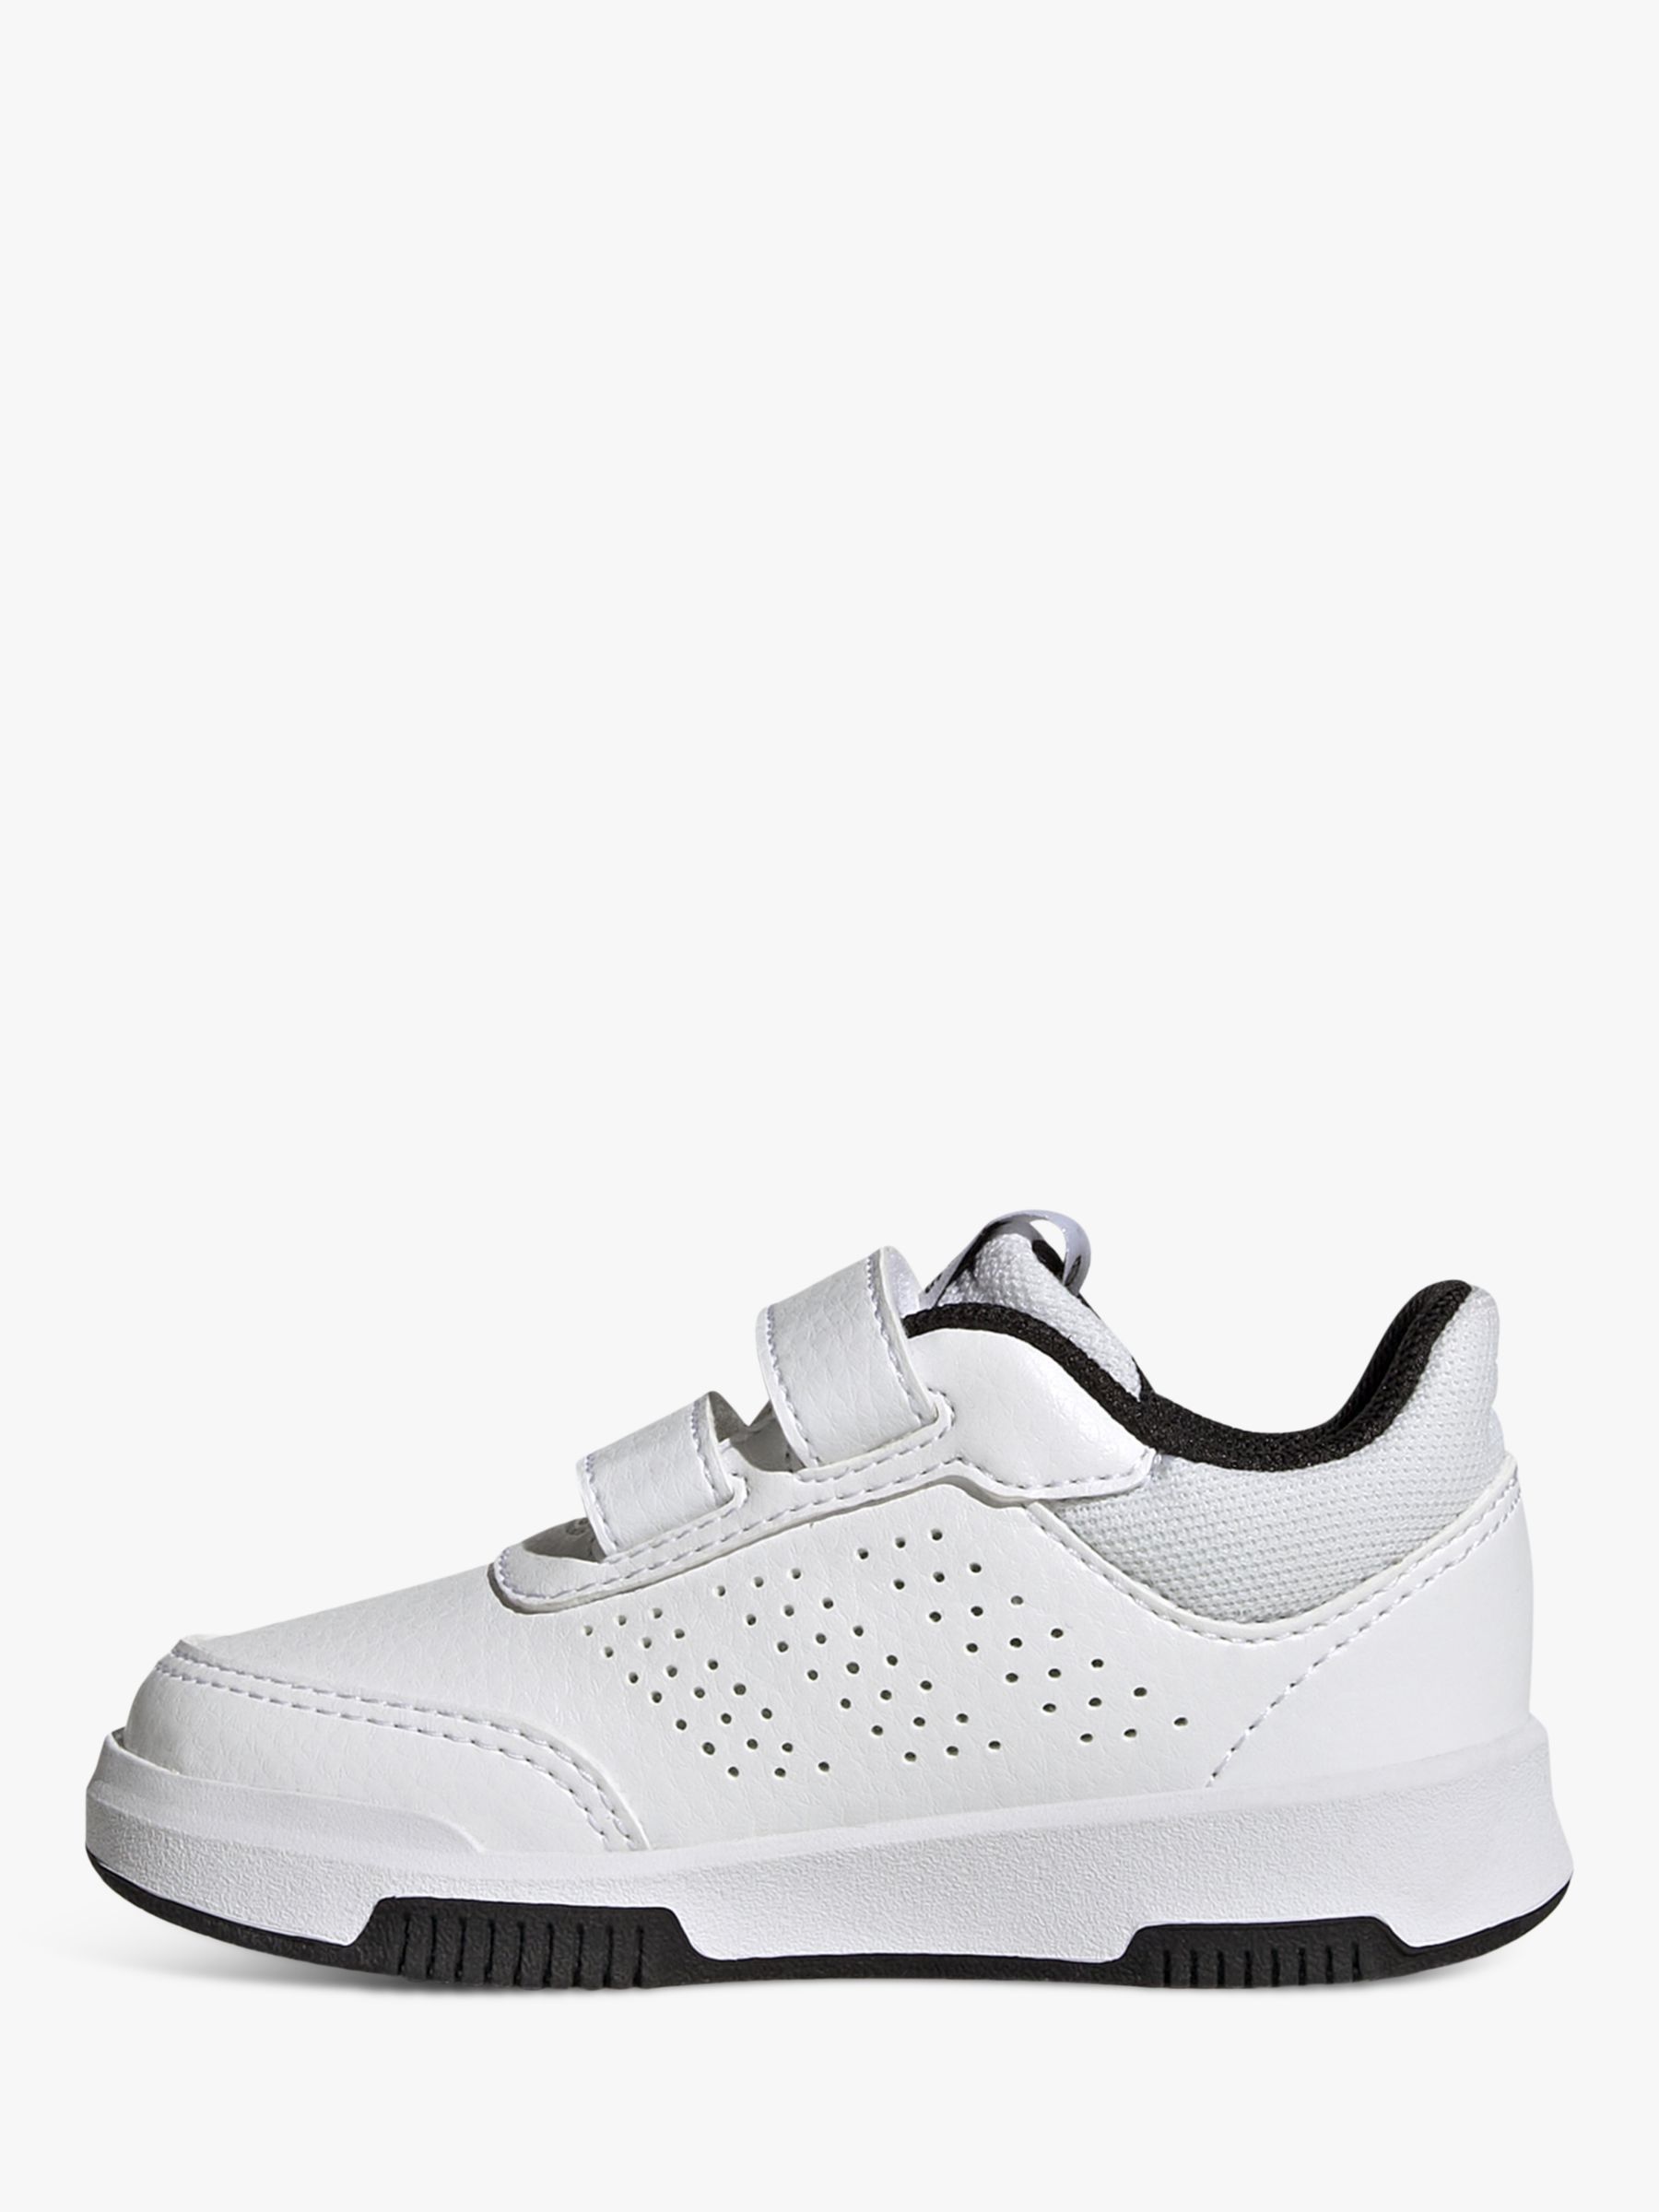 adidas Kids' Tensaur Sport Riptape Running Shoes, White/Black/Black, 5 Jnr